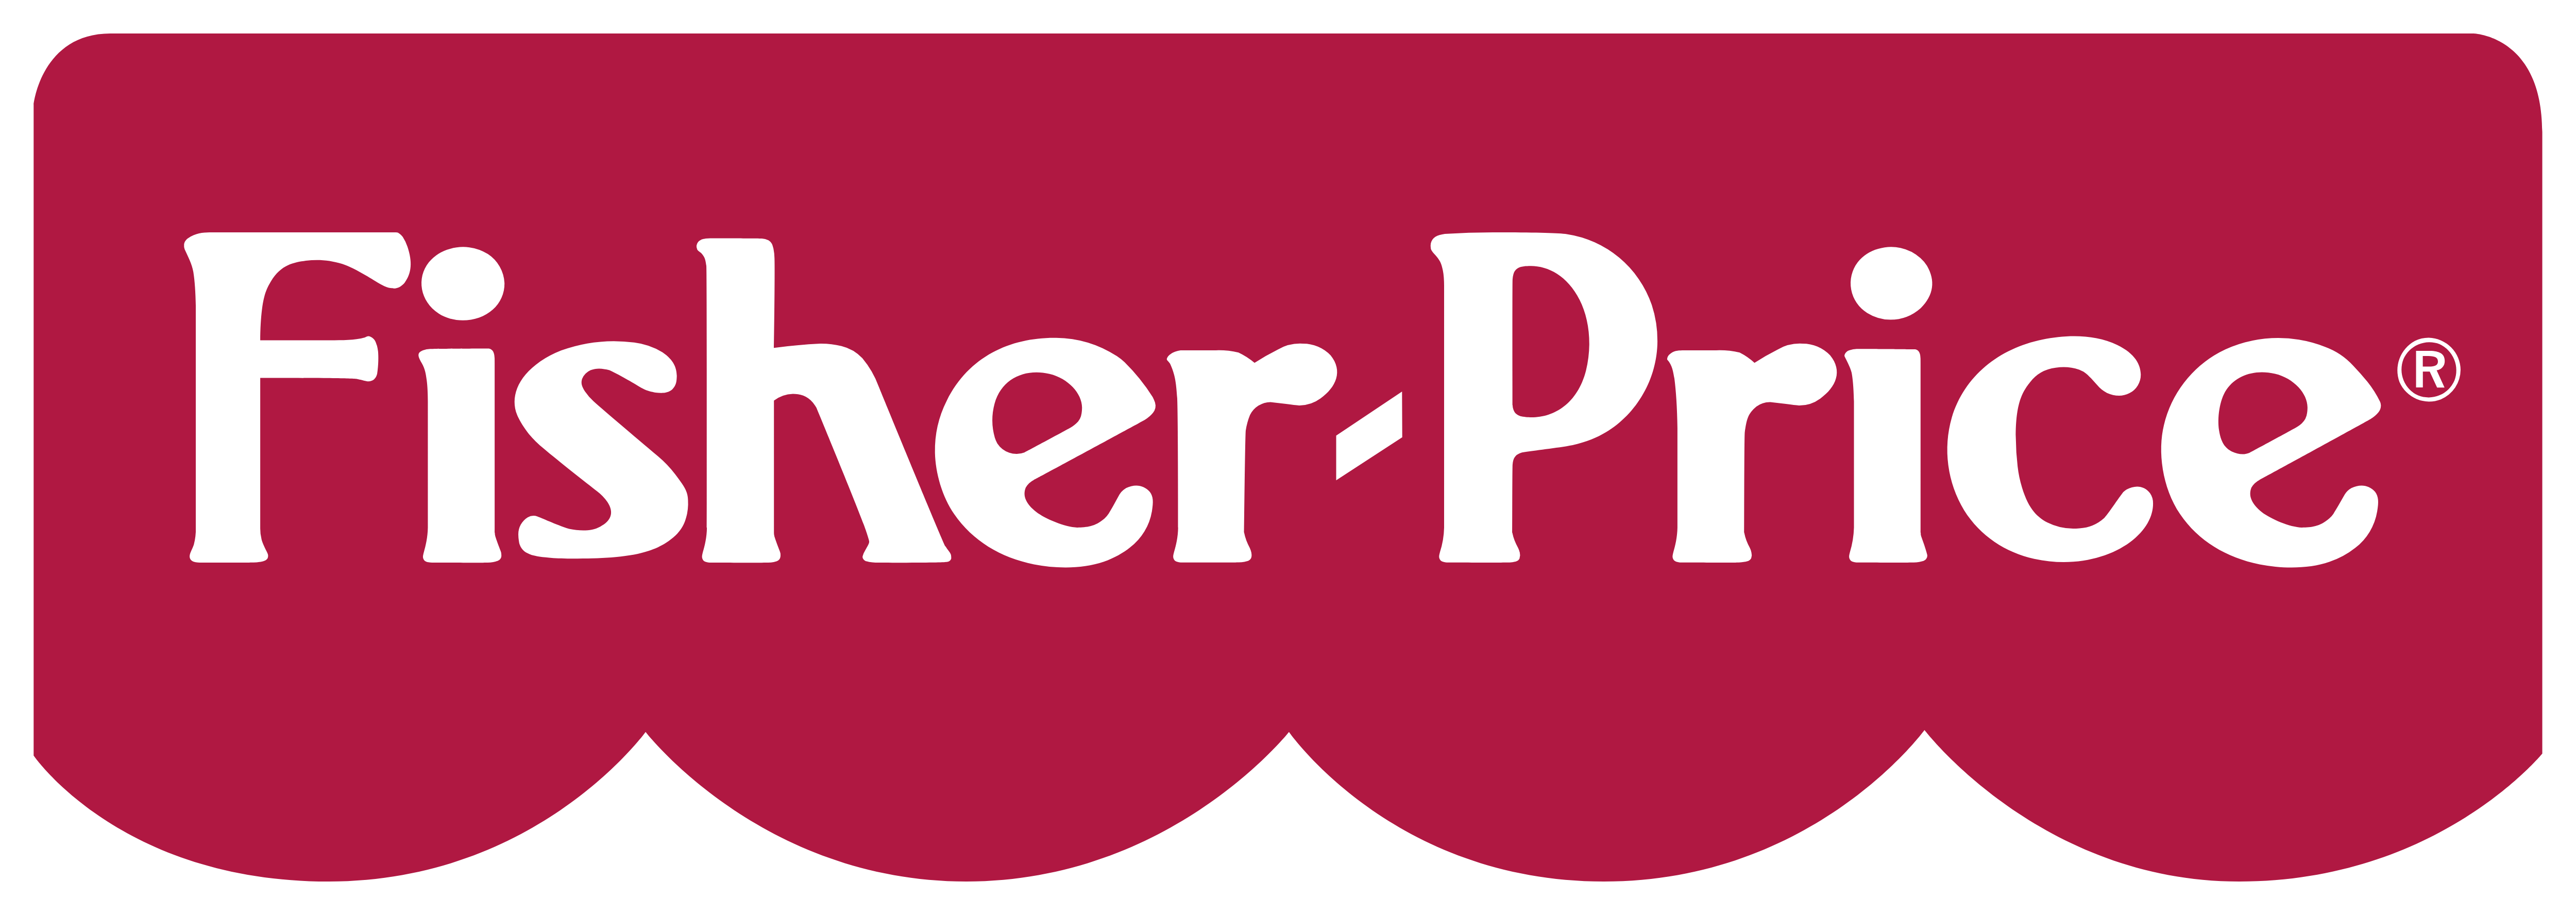 Fisher-Price Logo - Fisher Price – Logos Download